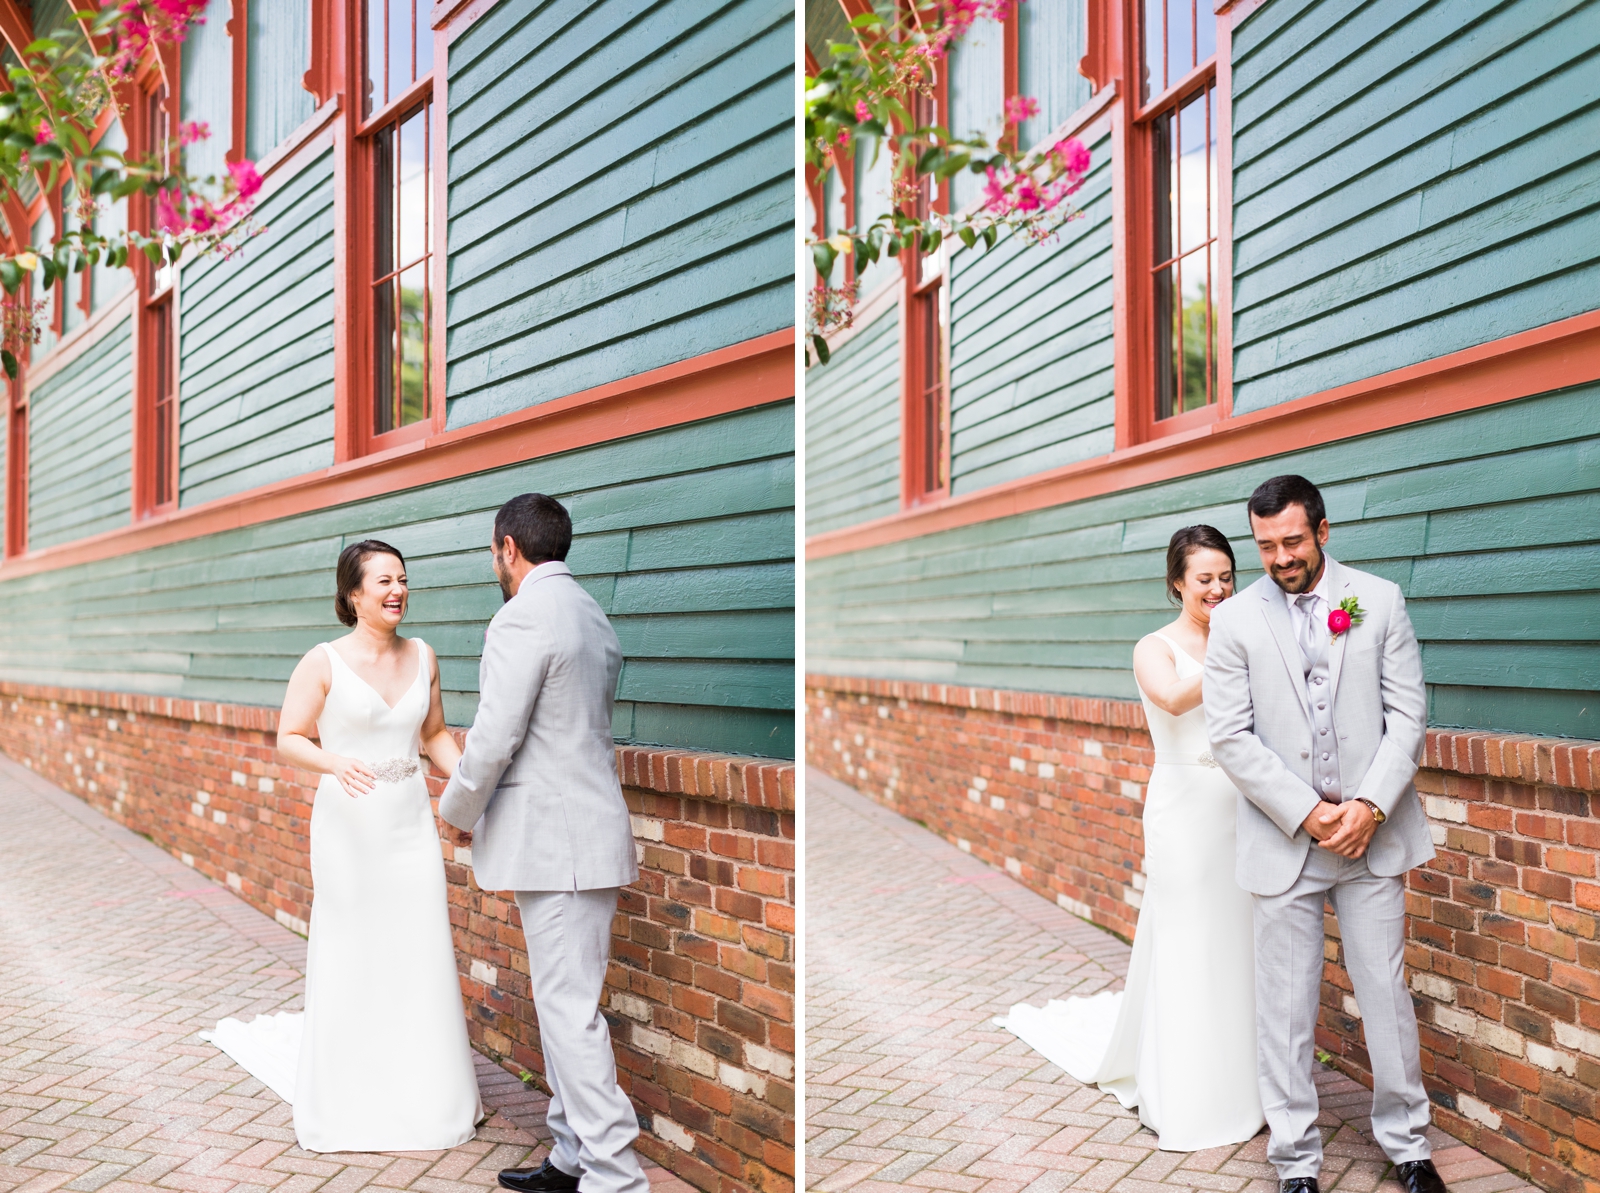 Trolley Barn Wedding - Sydney Bruton Photography